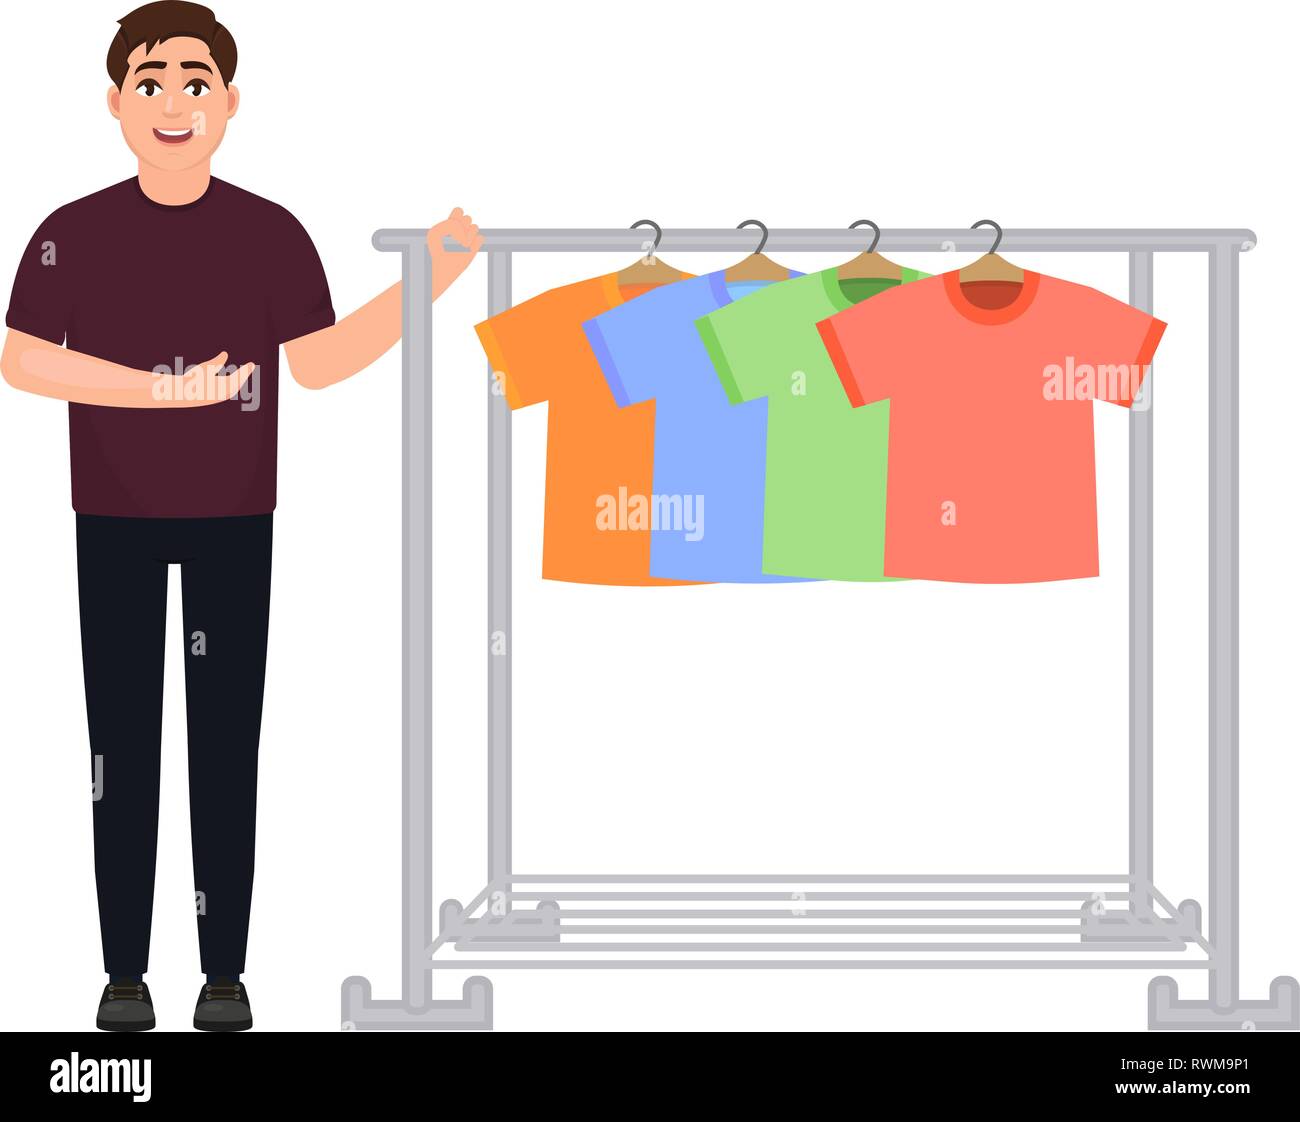 Il ragazzo si mette in mostra un armadio di t-shirt, un uomo vende t-shirt, un appendiabiti, un carattere in uno stile cartoon. Illustrazione Vettoriale